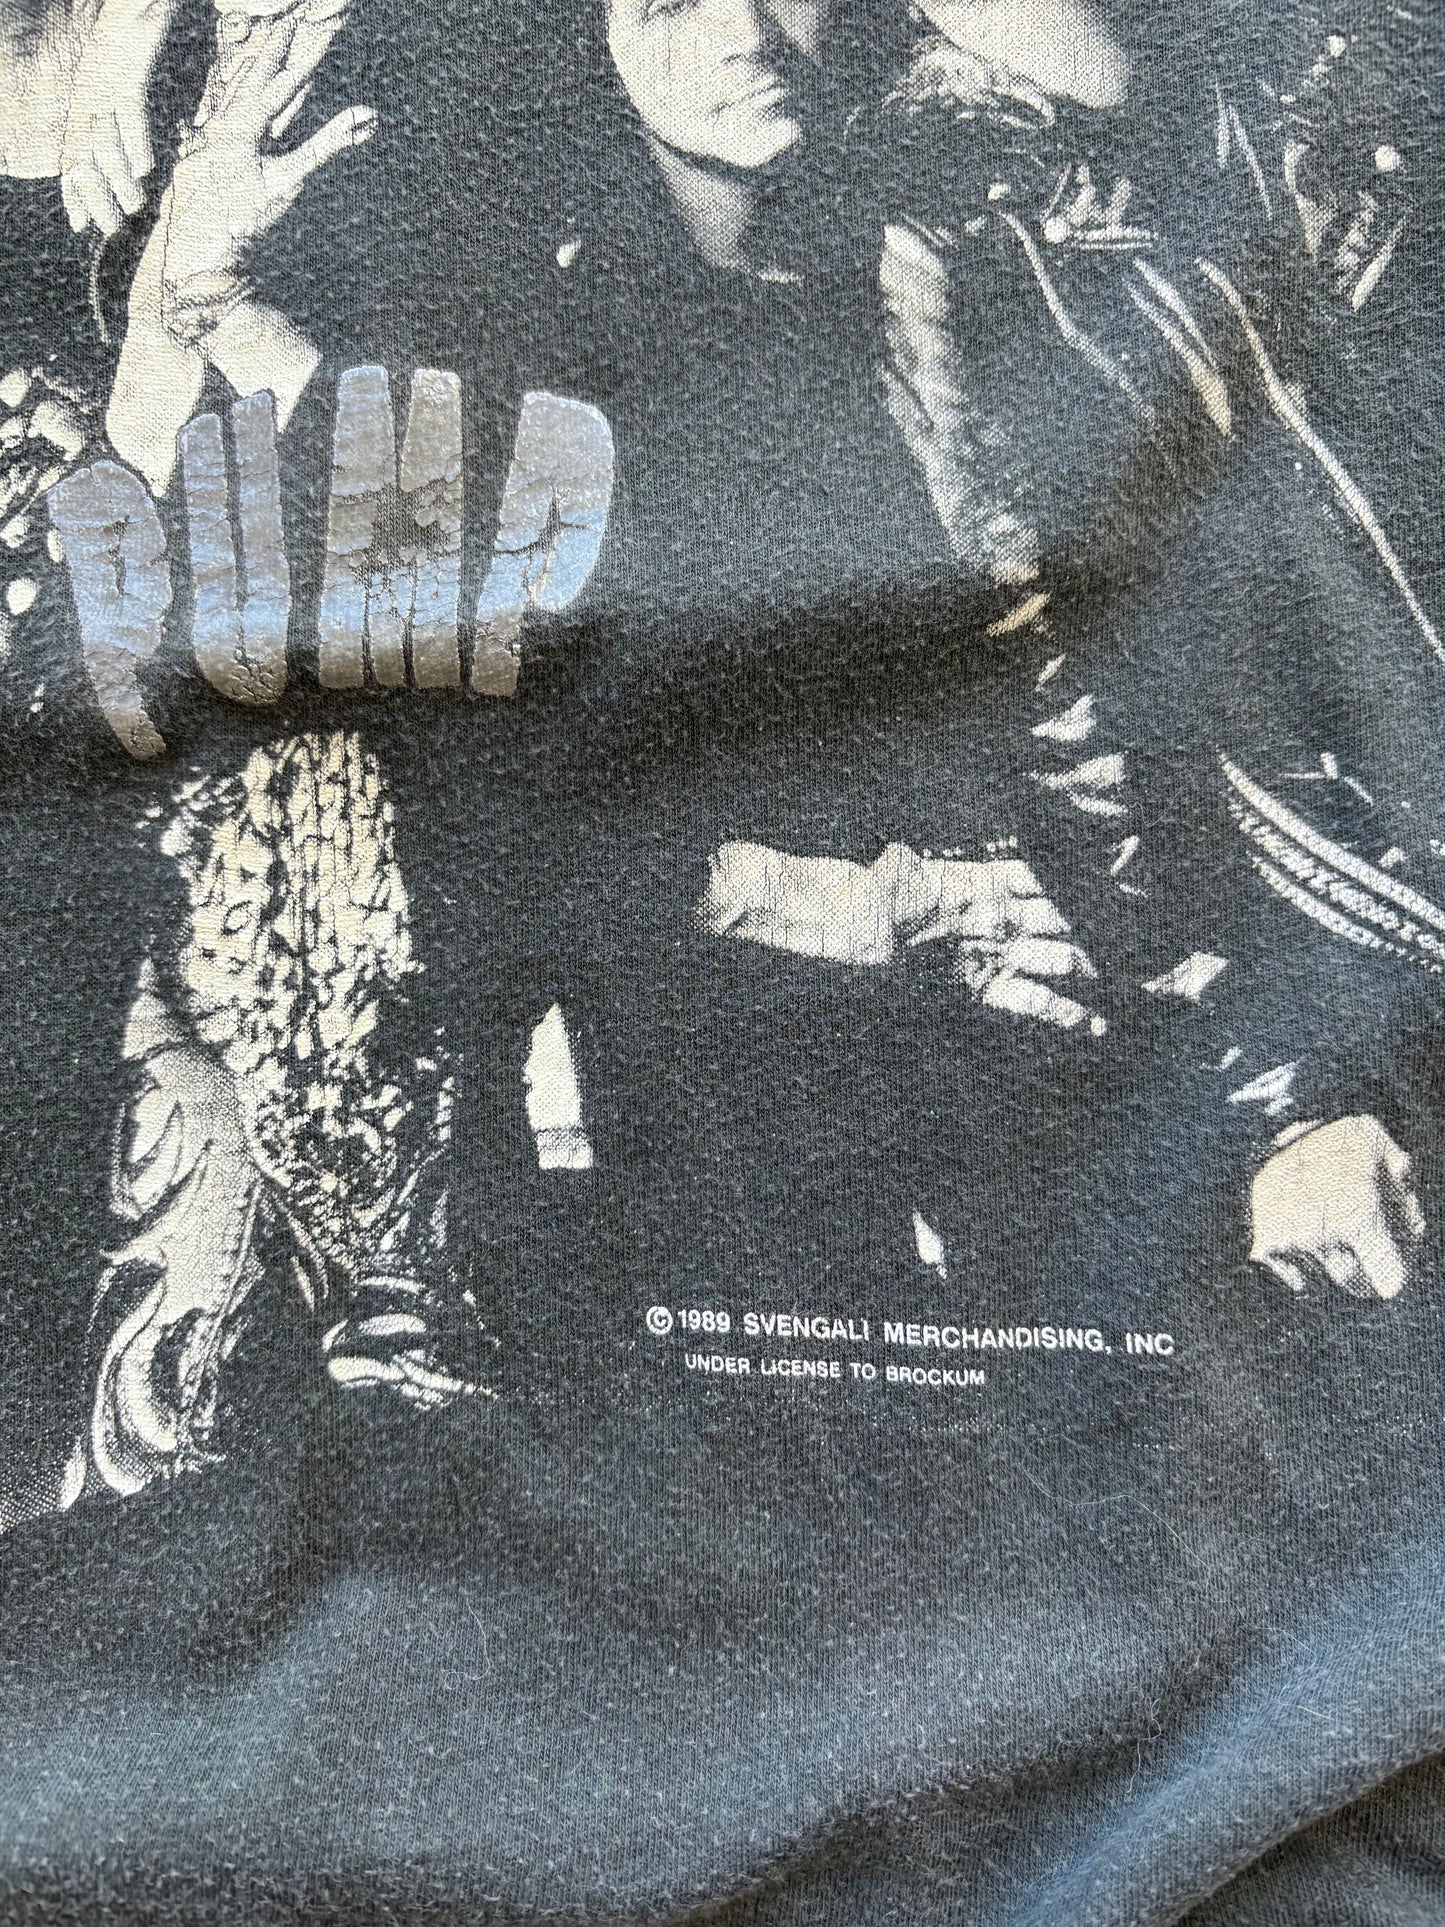 1989 Aerosmith Pump Tour Tee Size XL